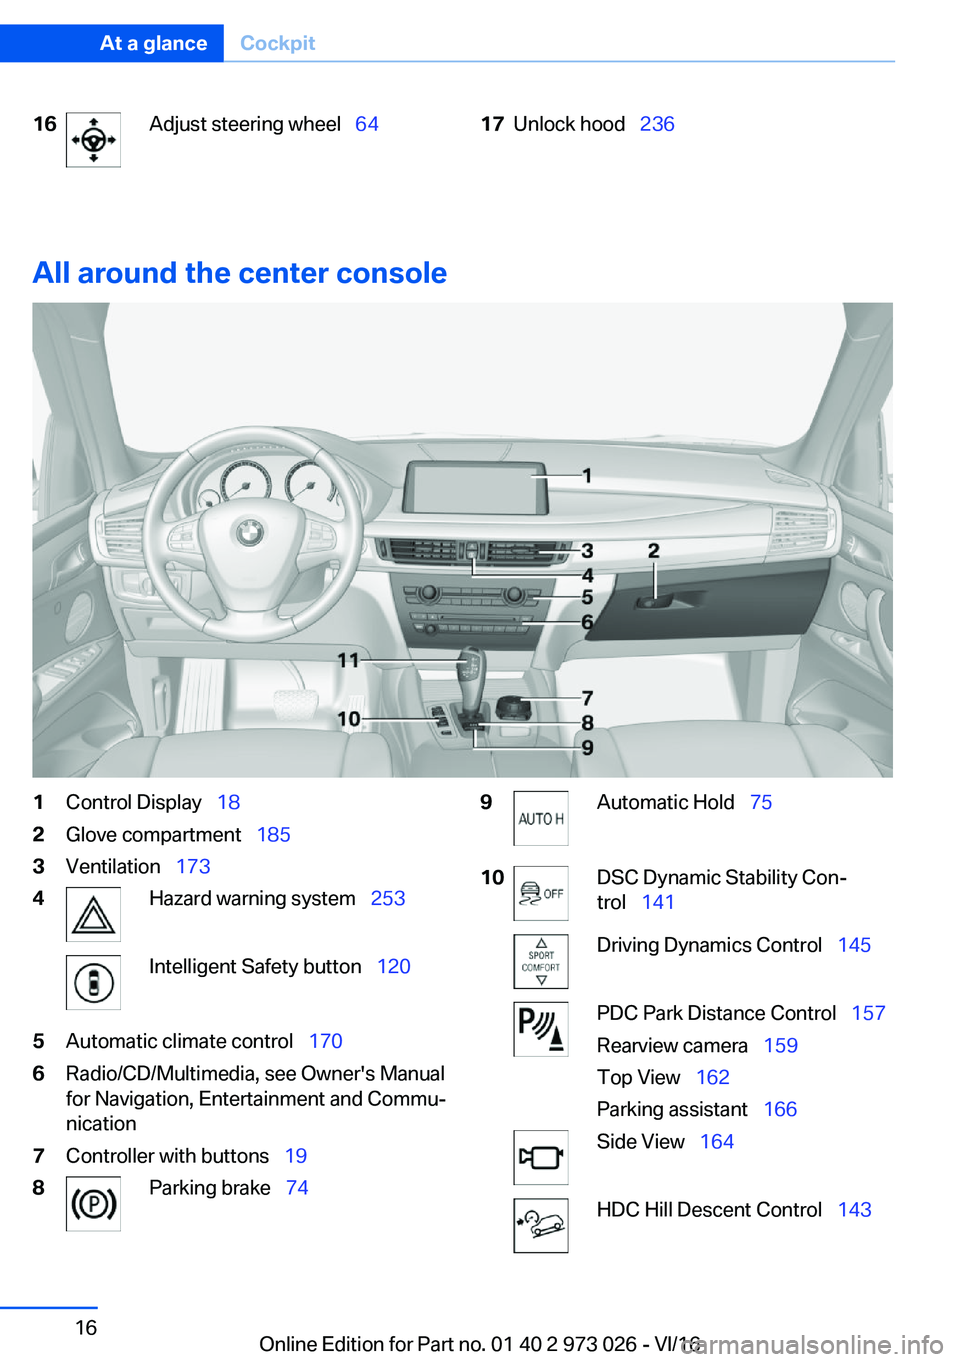 BMW X5 2017 User Guide �1�6�A�d�j�u�s�t� �s�t�e�e�r�i�n�g� �w�h�e�e�l#\#_�6�4�1�7�U�n�l�o�c�k� �h�o�o�d#\#_�2�3�6
�A�l�l��a�r�o�u�n�d��t�h�e��c�e�n�t�e�r��c�o�n�s�o�l�e
�1�C�o�n�t�r�o�l� �D�i�s�p�l�a�y#\#_ �1�8�2�G�l�o�